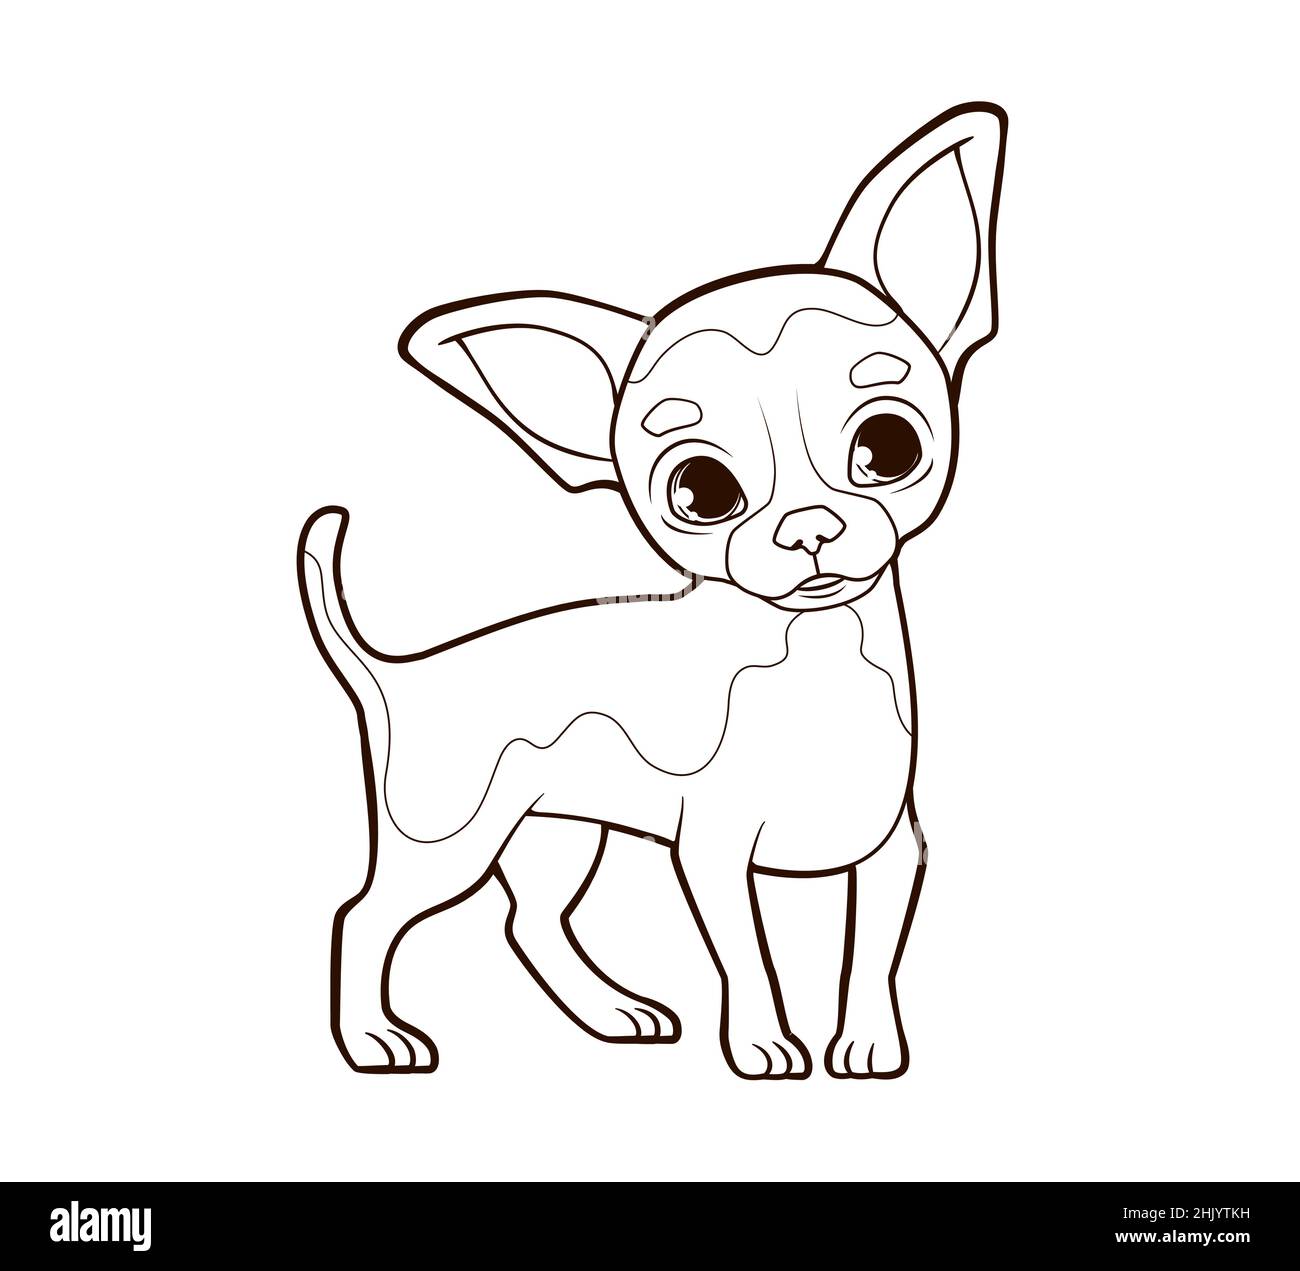 Livre de coloriage petit chien drôle chihuahua avec de grandes oreilles se tient sur des pattes minces.Illustration vectorielle de style dessin animé, ligne noire et blanche Illustration de Vecteur